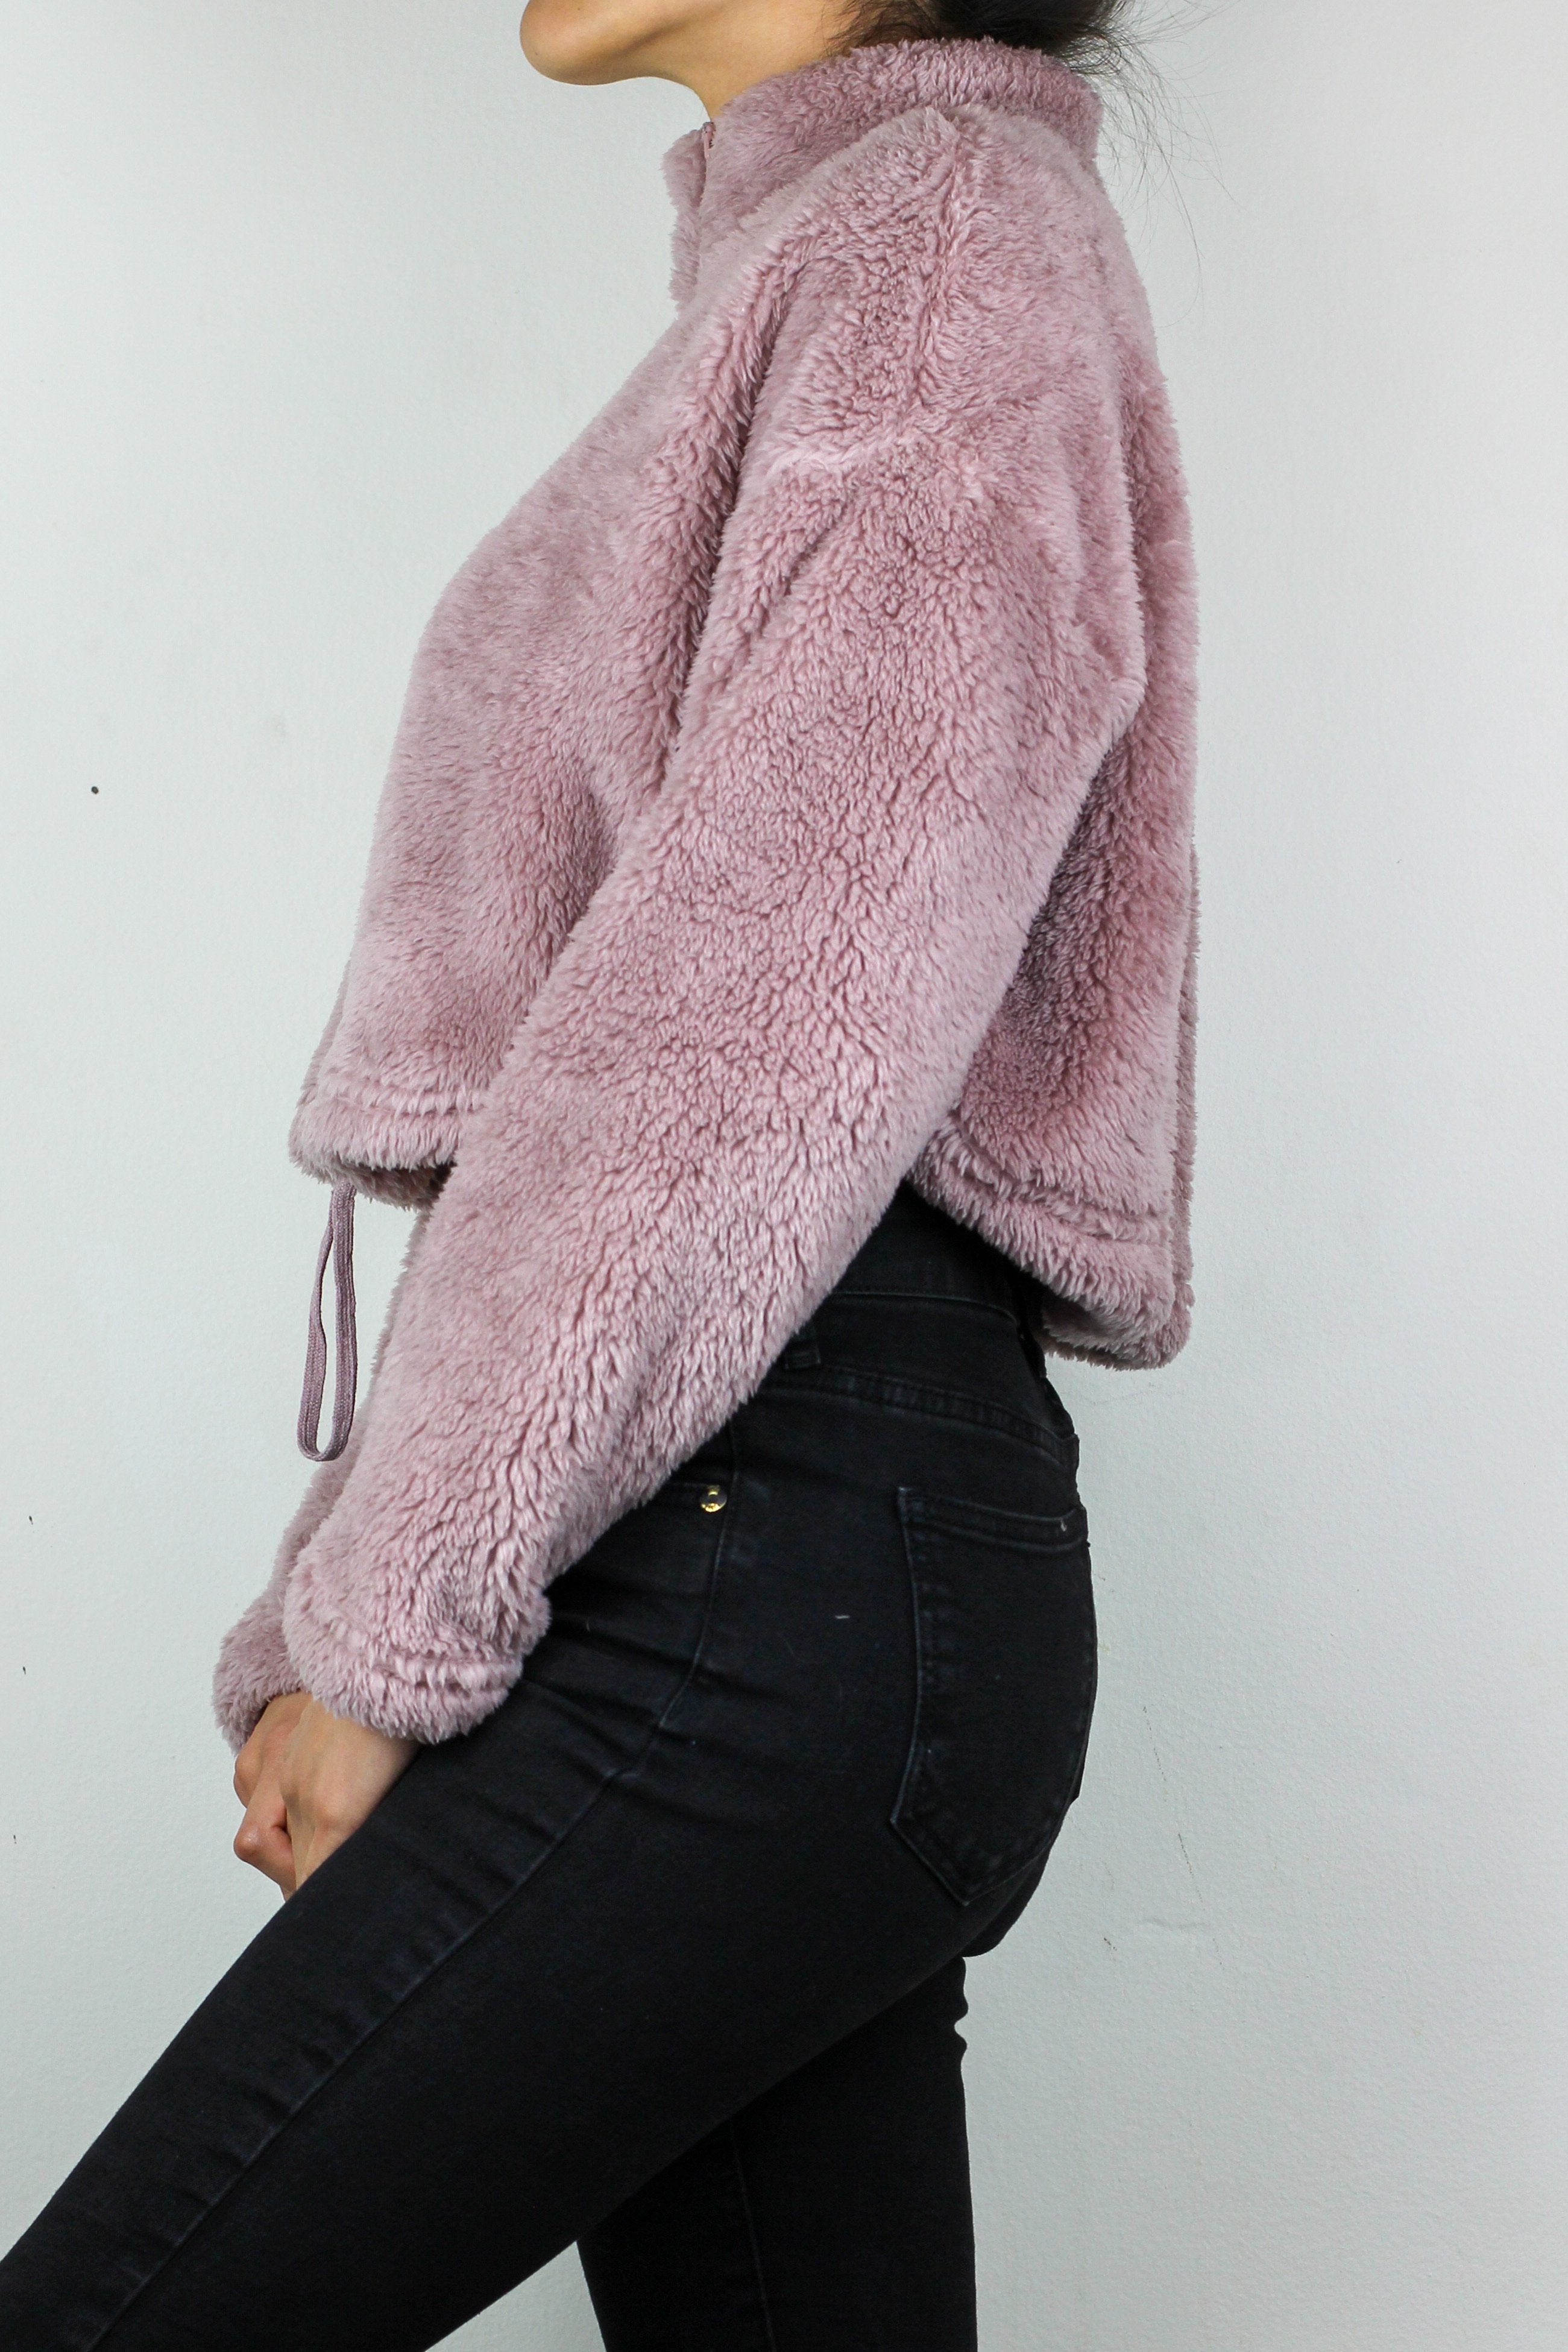 Waverly Crop Sweater